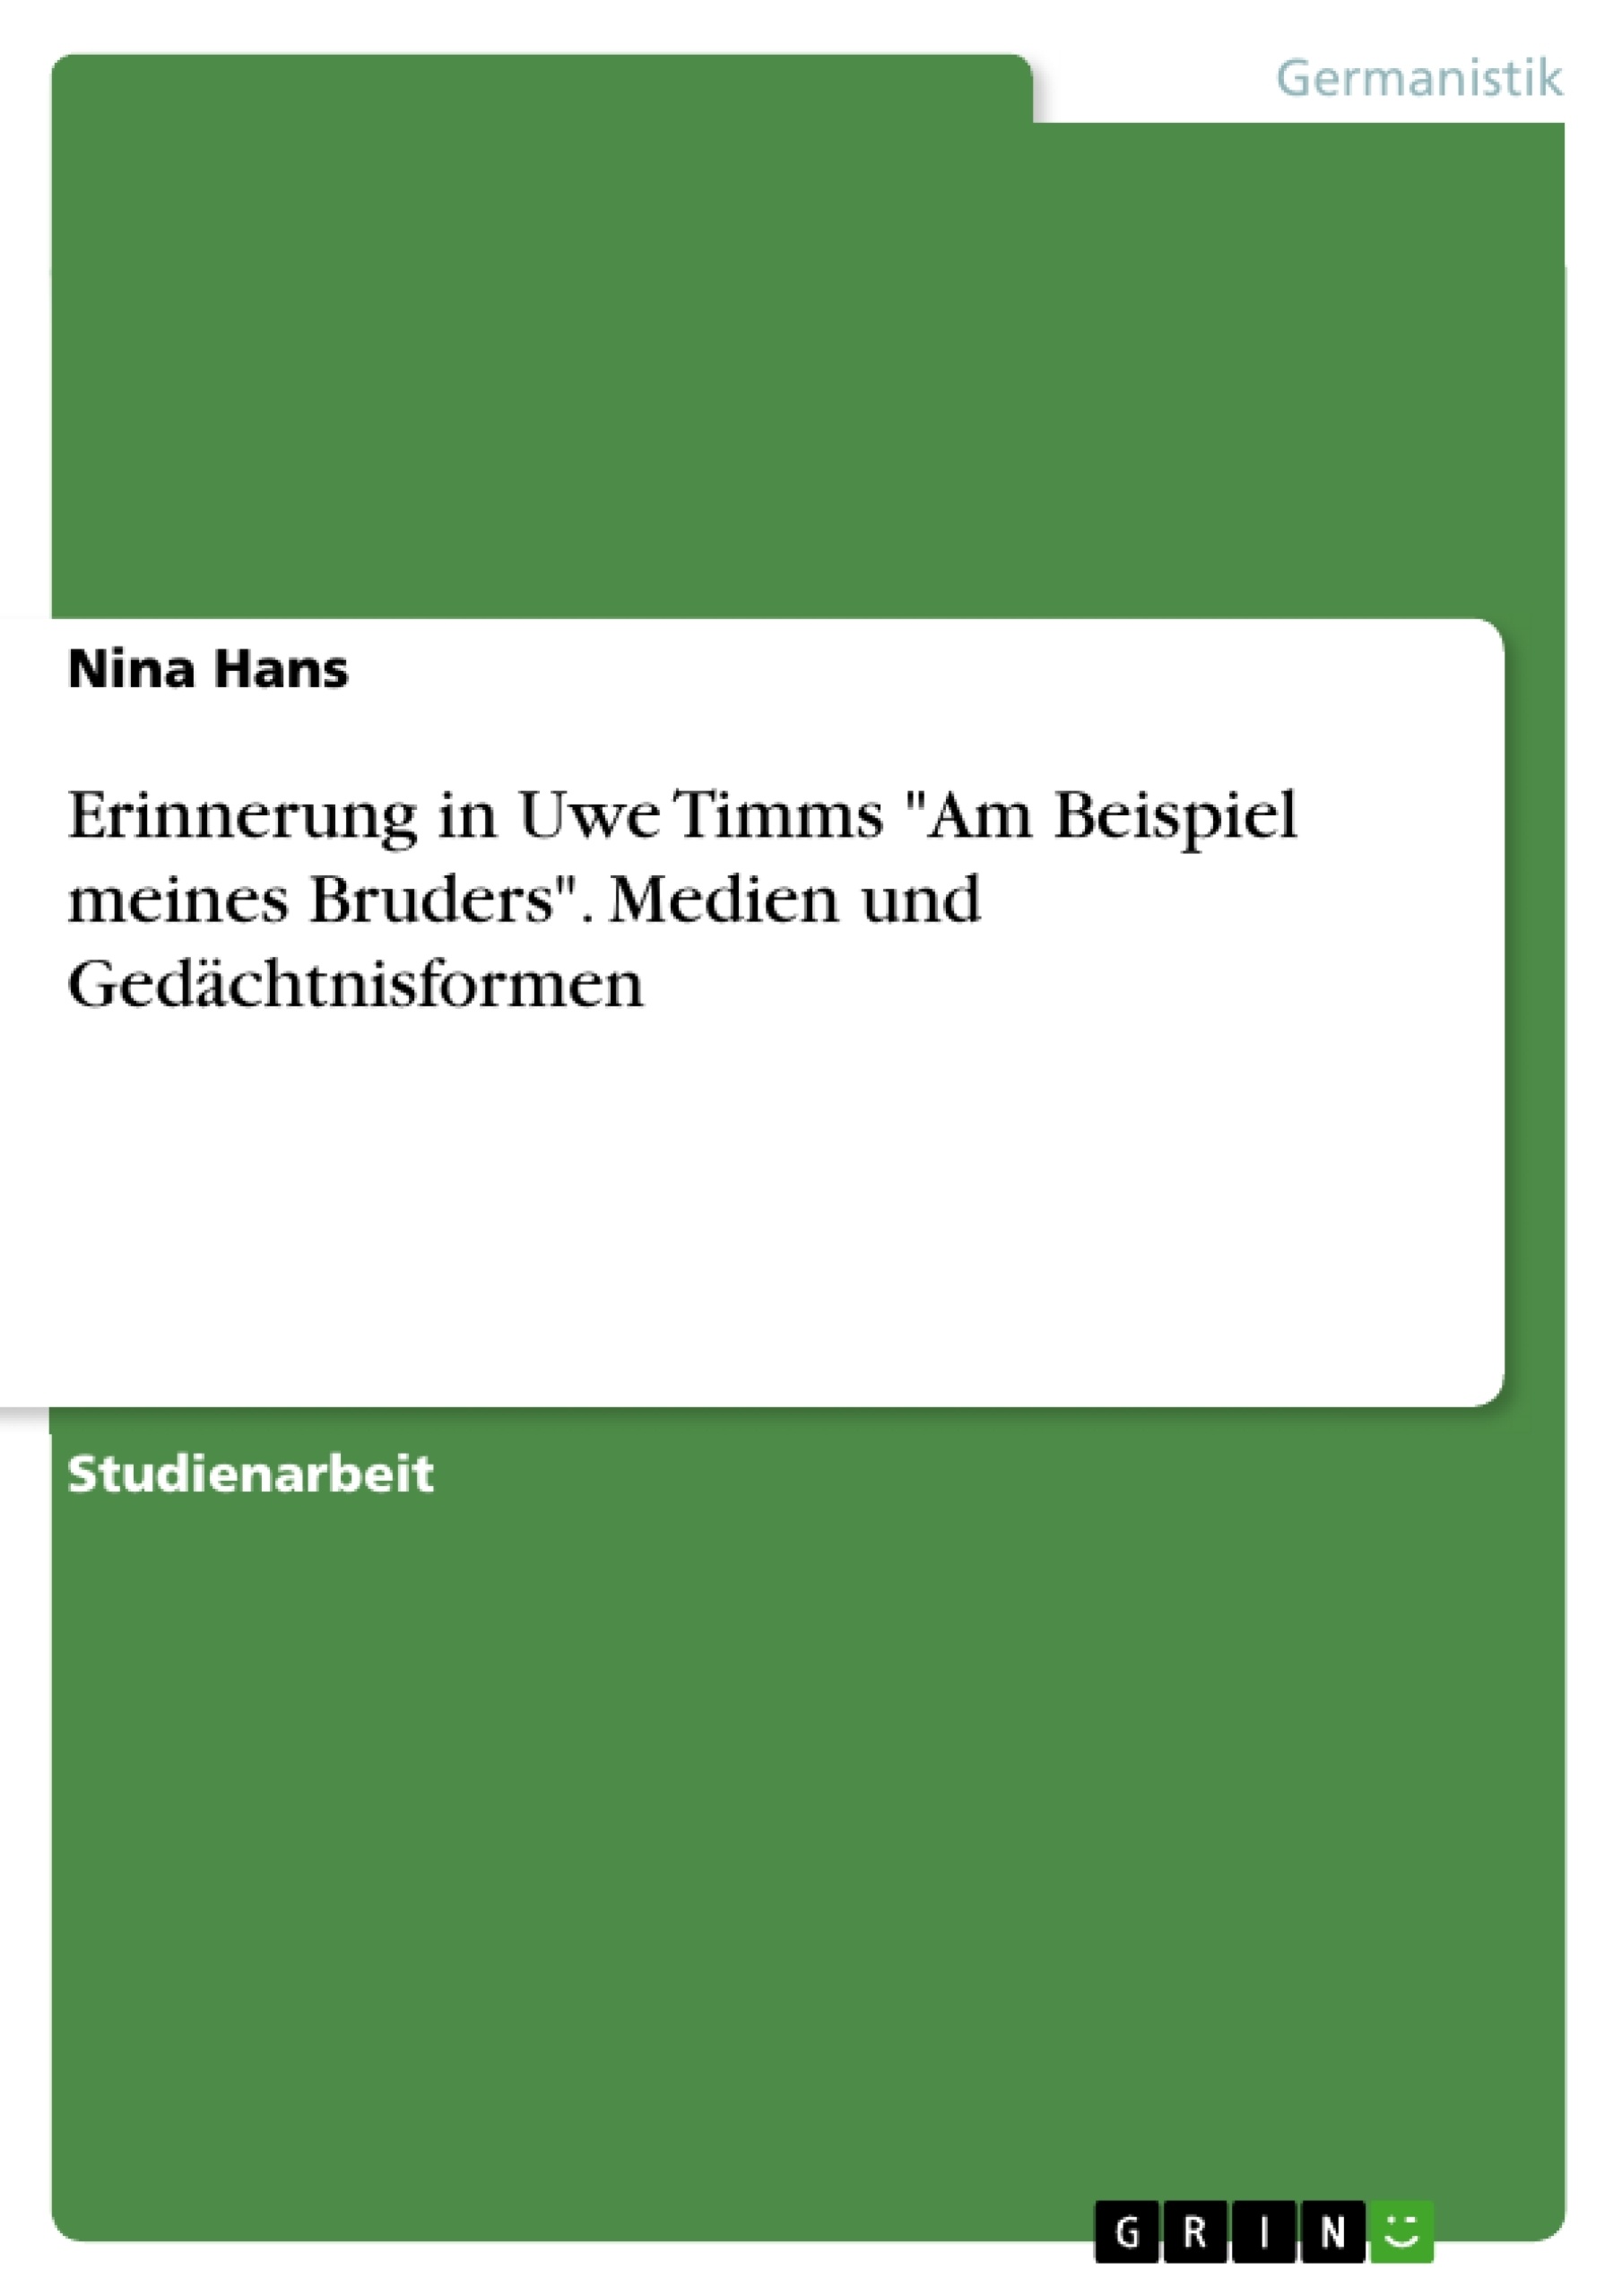 Title: Erinnerung in Uwe Timms "Am Beispiel meines Bruders". Medien und Gedächtnisformen